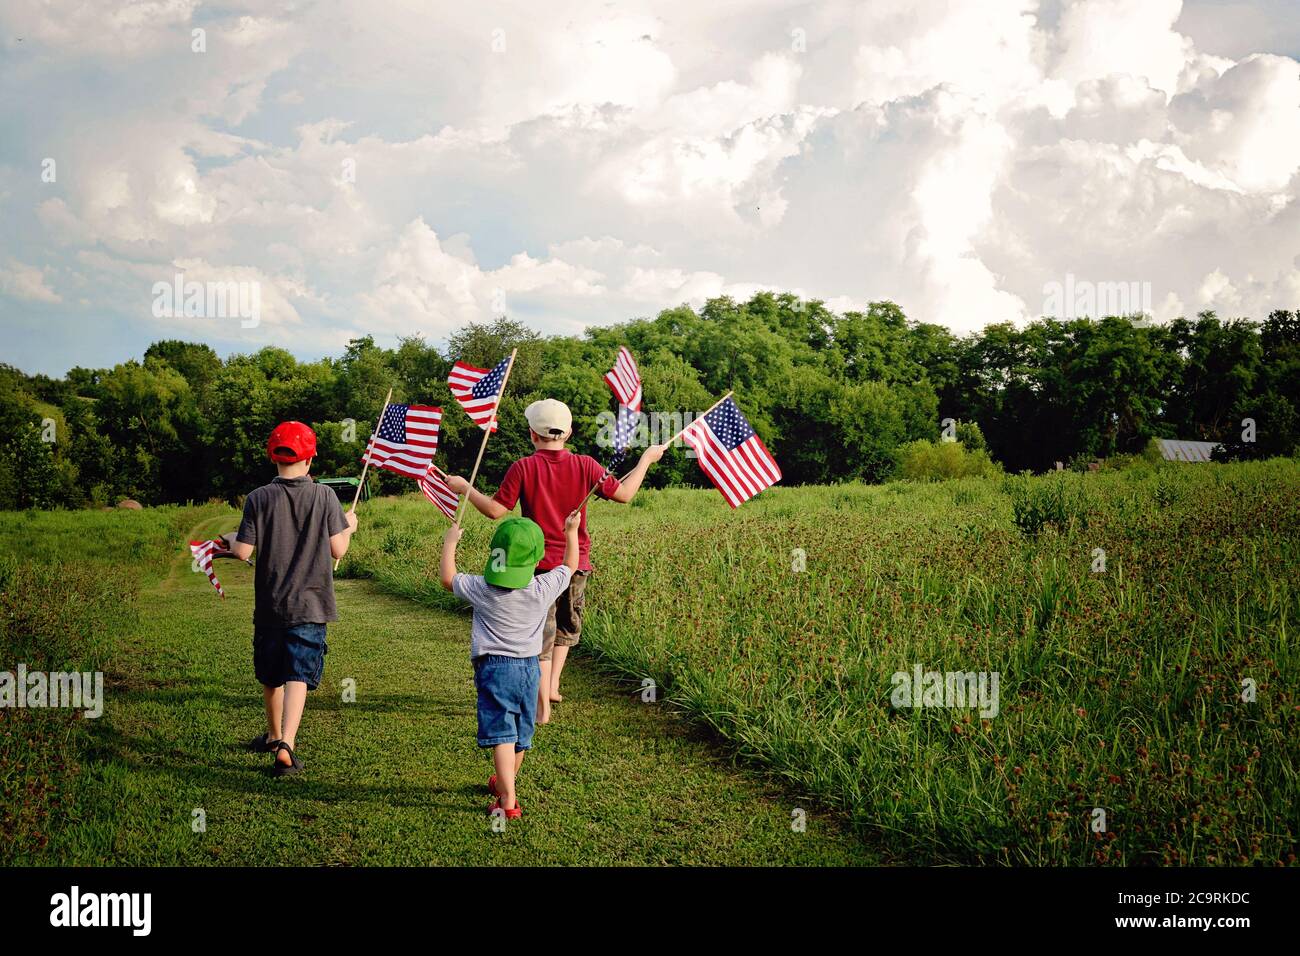 Drei Jungen halten American Flags, während sie auf einem Land spazieren Pfad in einem grünen Feld winken die Fahnen Stockfoto